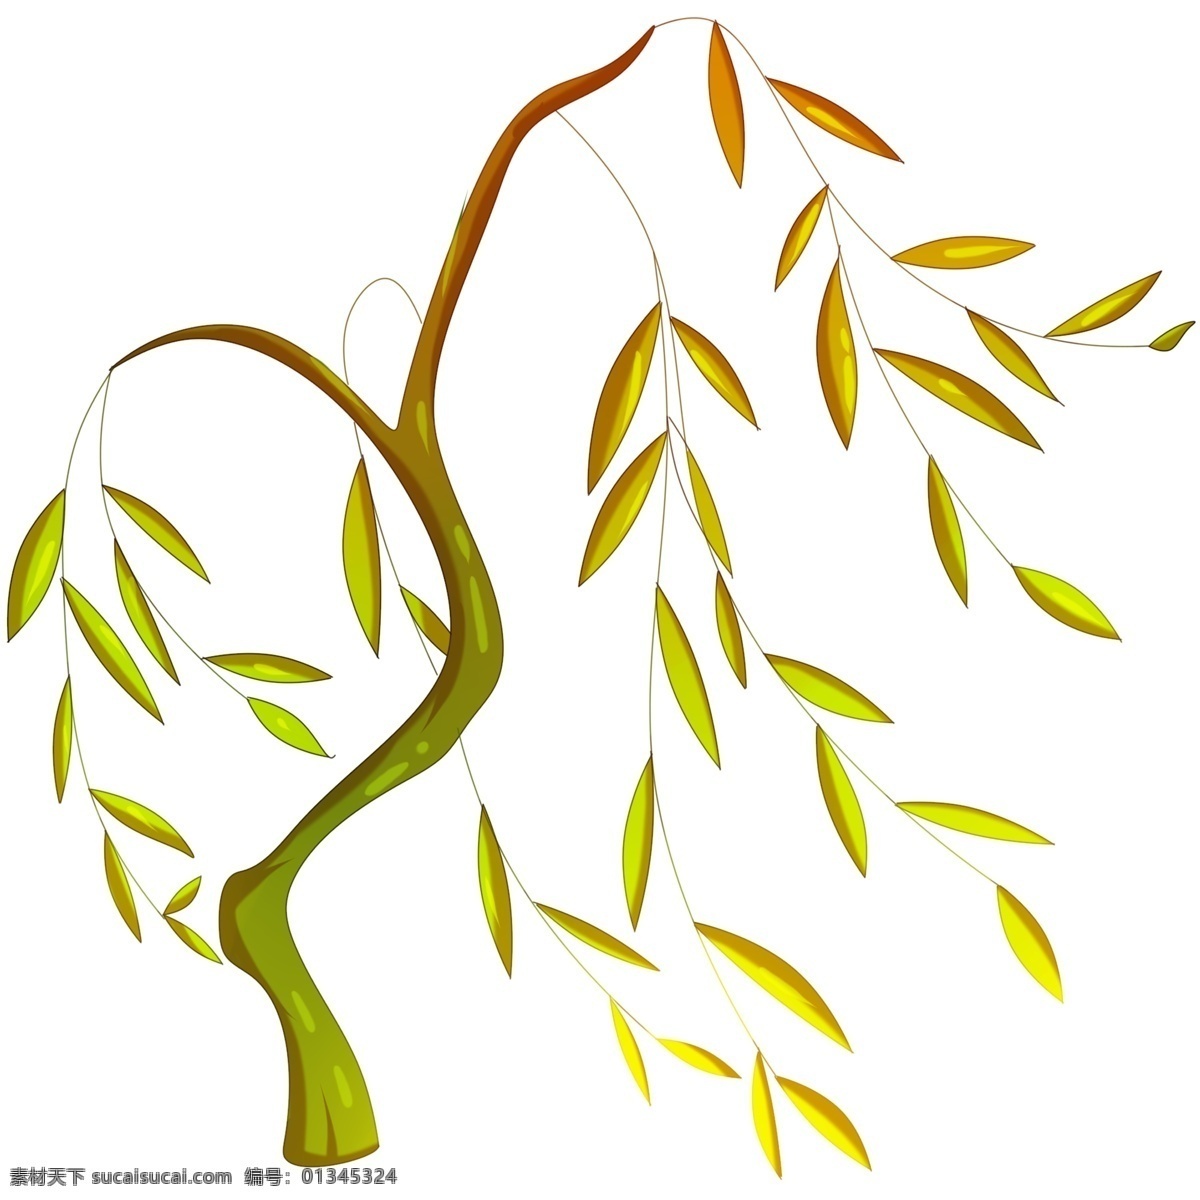 黄色 柳树 手绘 插画 黄色的柳树 黄色的叶子 柳树装饰 柳树插画 漂亮的柳树 飘落的柳树